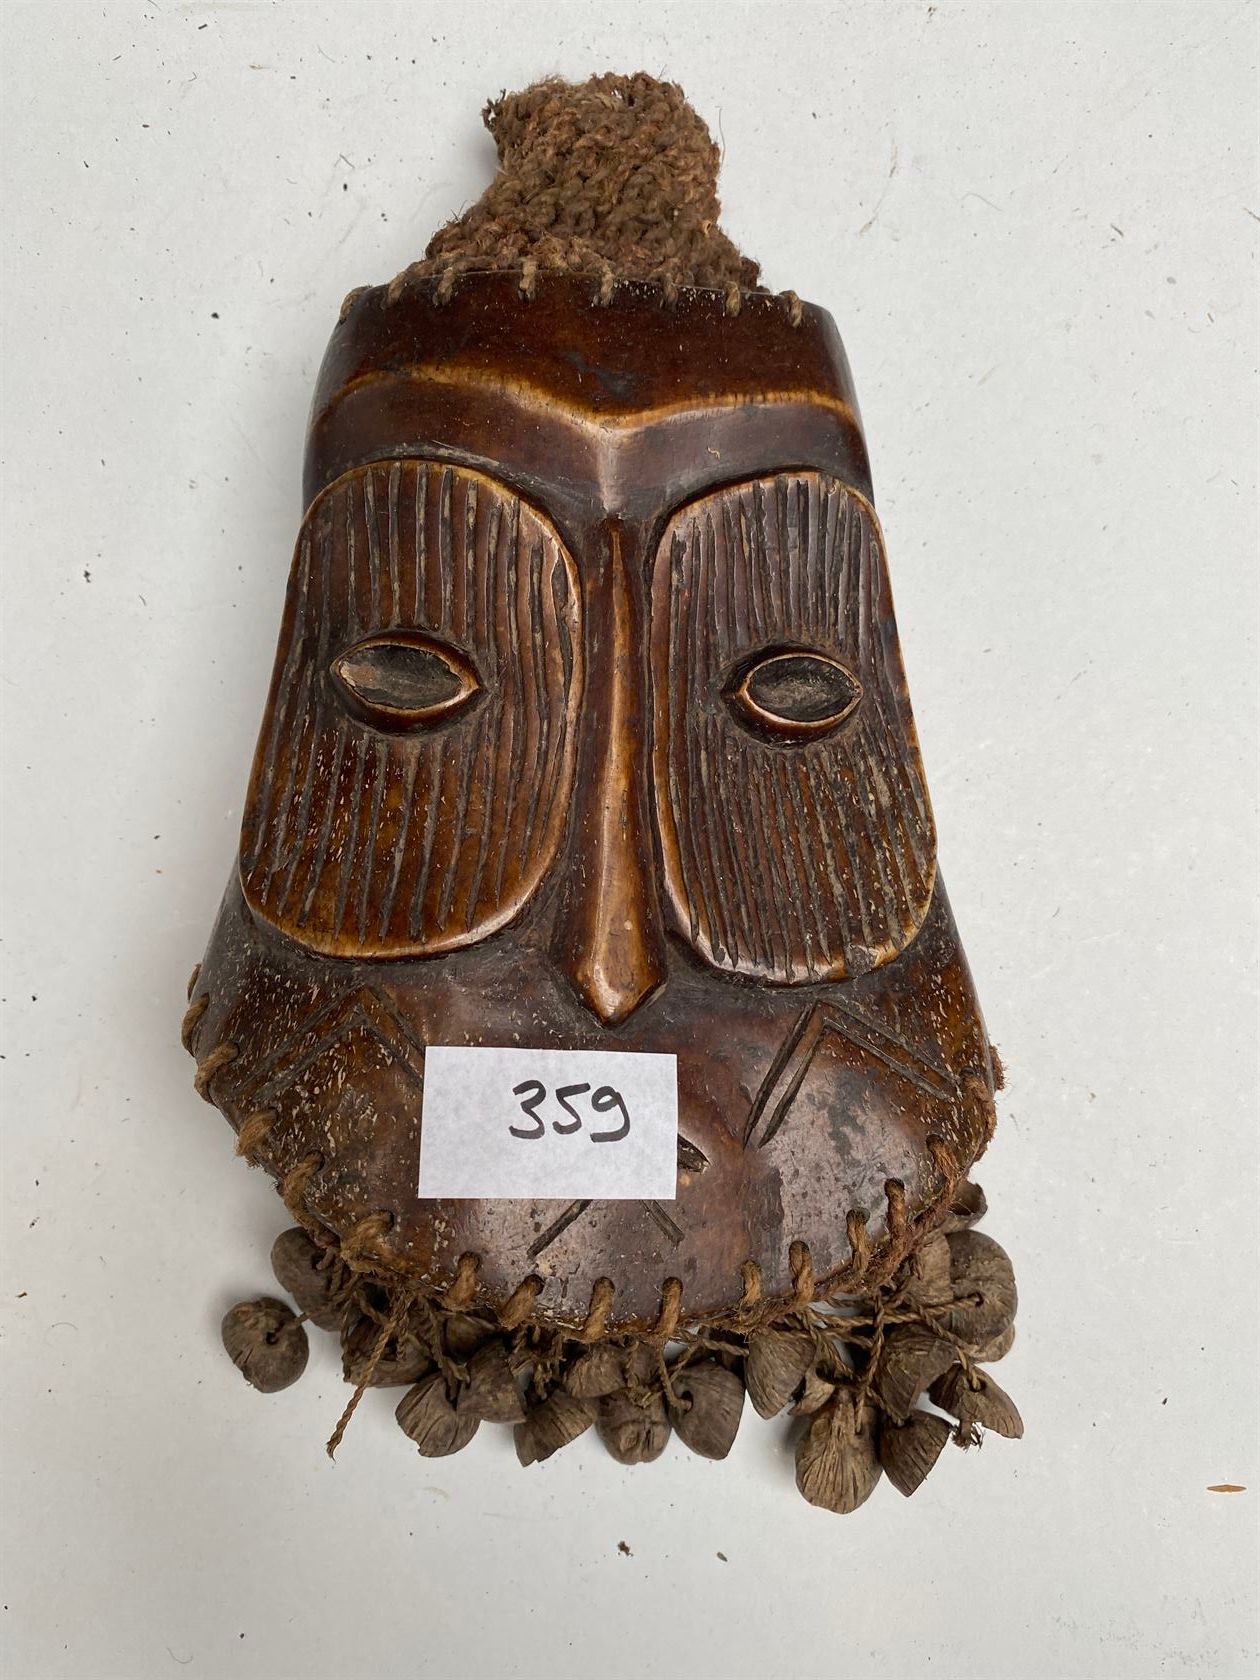 Null 一个杰纳斯类型的骨雕，用种子和纤维代表一个人的面具。20世纪中期。LEGA, 刚果民主共和国。高18厘米。